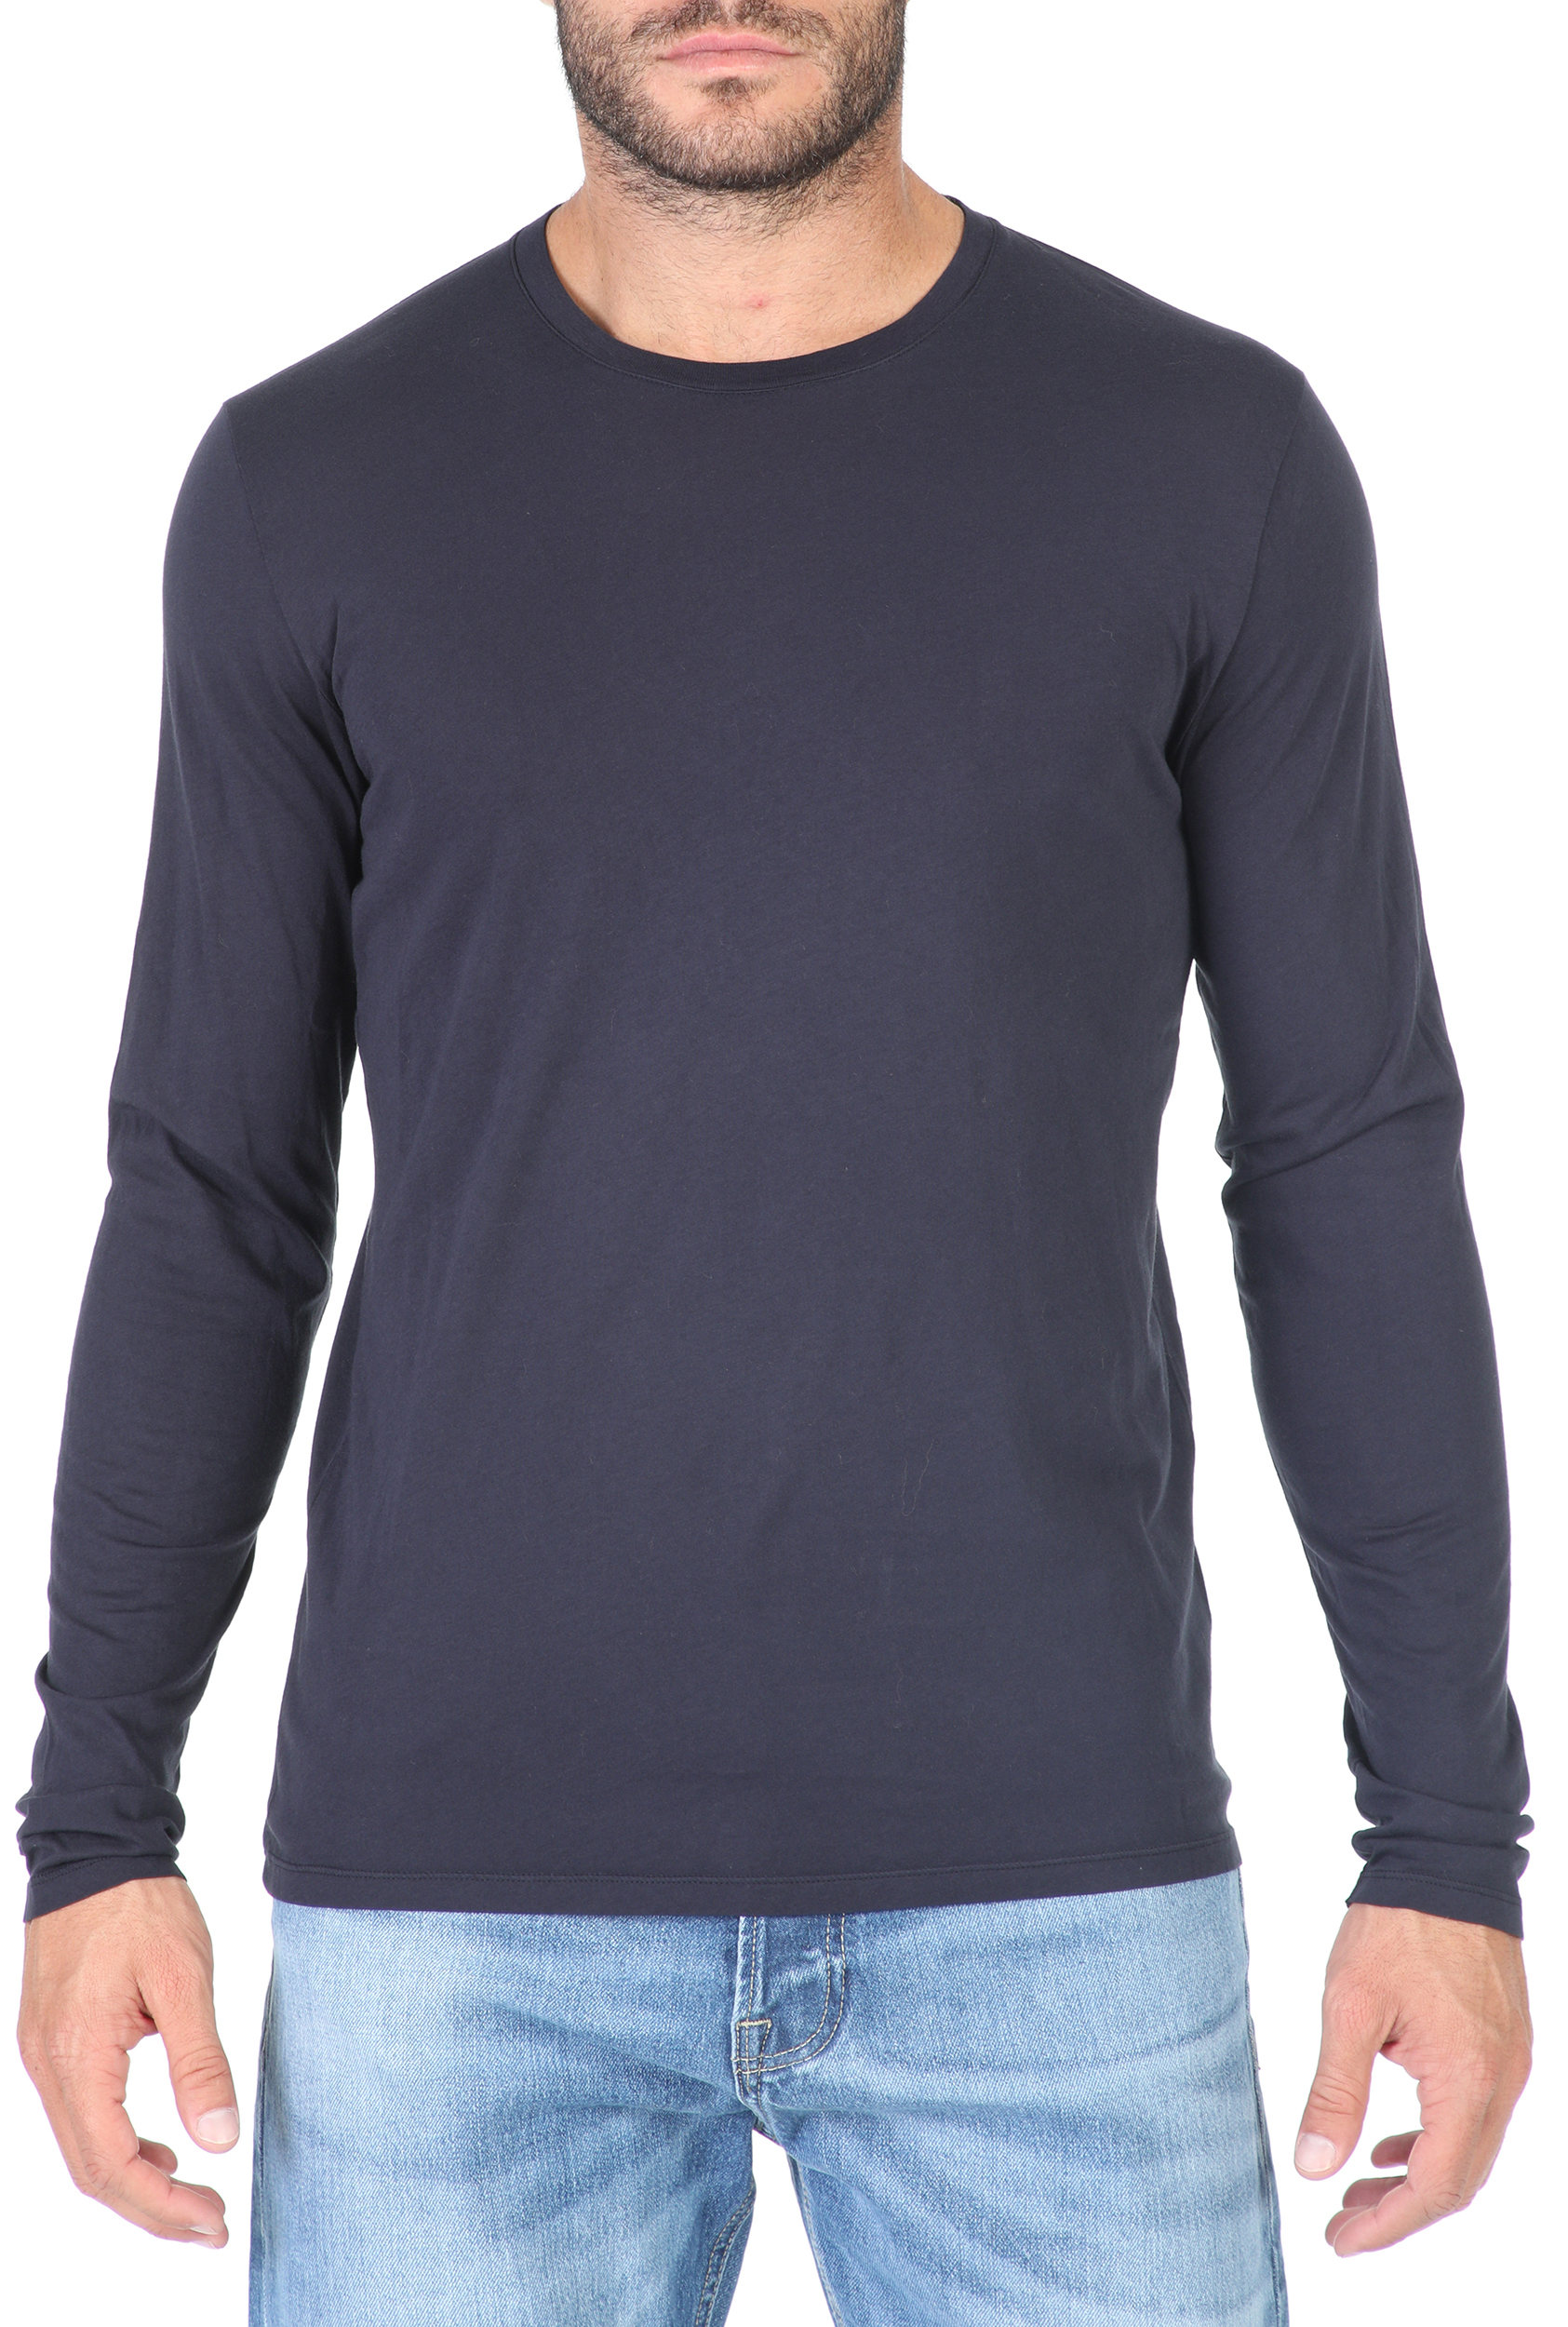 Ανδρικά/Ρούχα/Μπλούζες/Μακρυμάνικες AMERICAN VINTAGE - Ανδρική μακρυμάνικη μπλούζα AMERICAN VINTAGE μπλέ